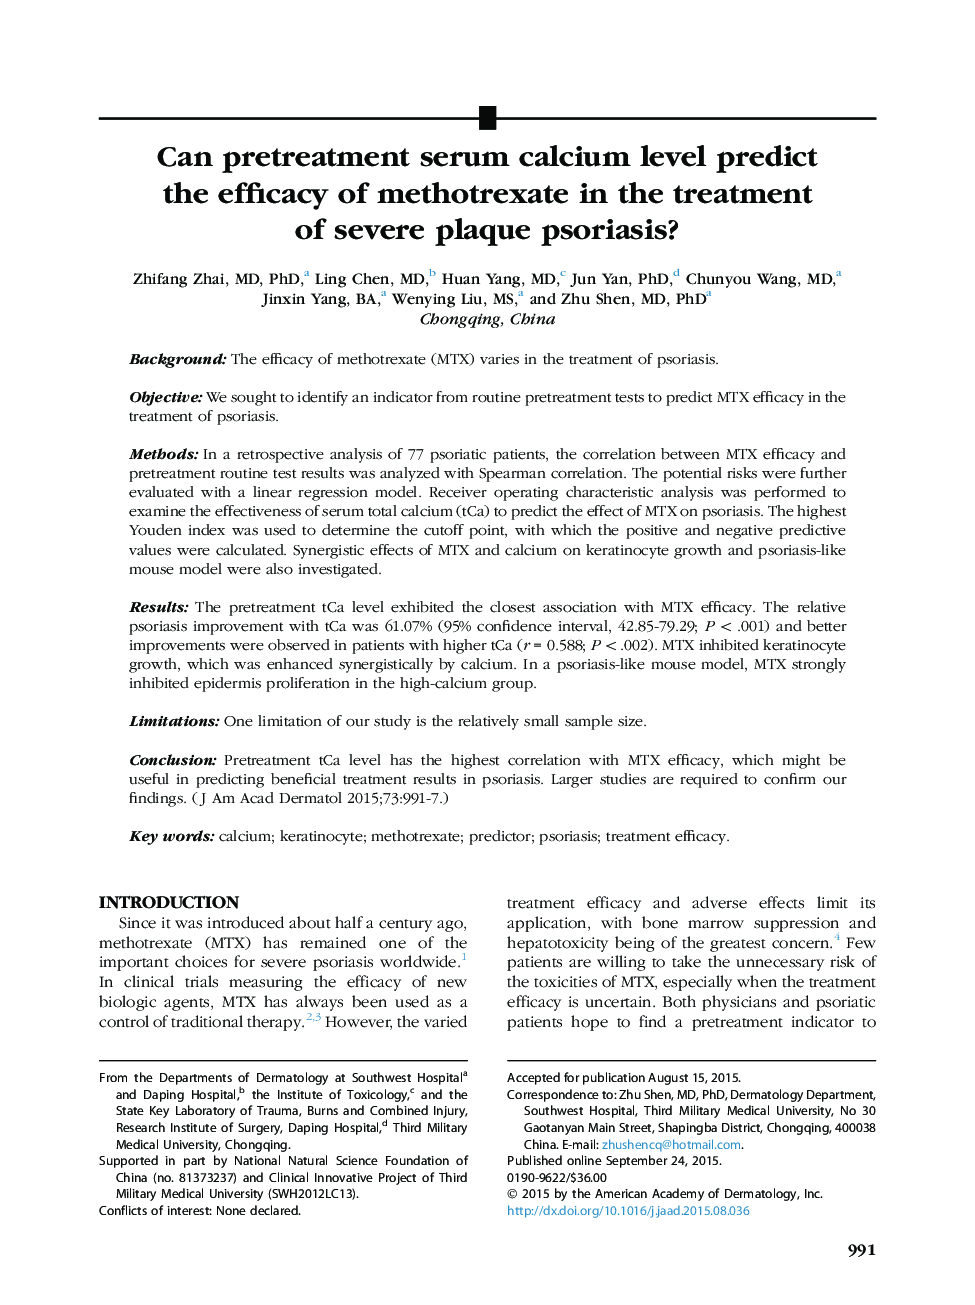 اصل مقاله پیشگیری از سطح سرمی کلسیم قبل از درمان، اثربخشی متوترکسات در درمان پسوریازیس پلاک شدید را پیش بینی می کند؟ 